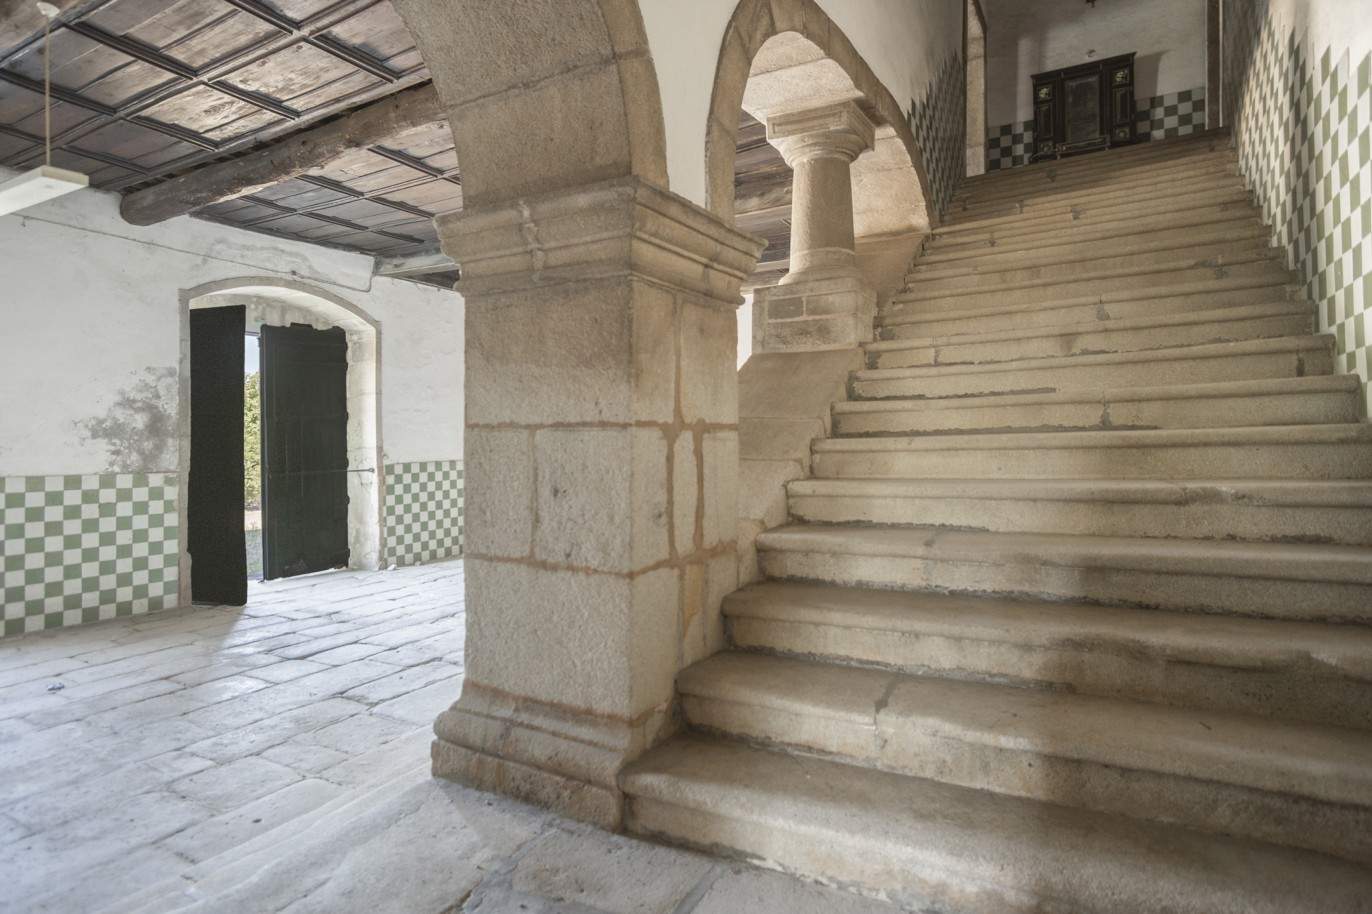 Venda: Palacete para restaurar com jardins, Lamego, Alto Douro _207360